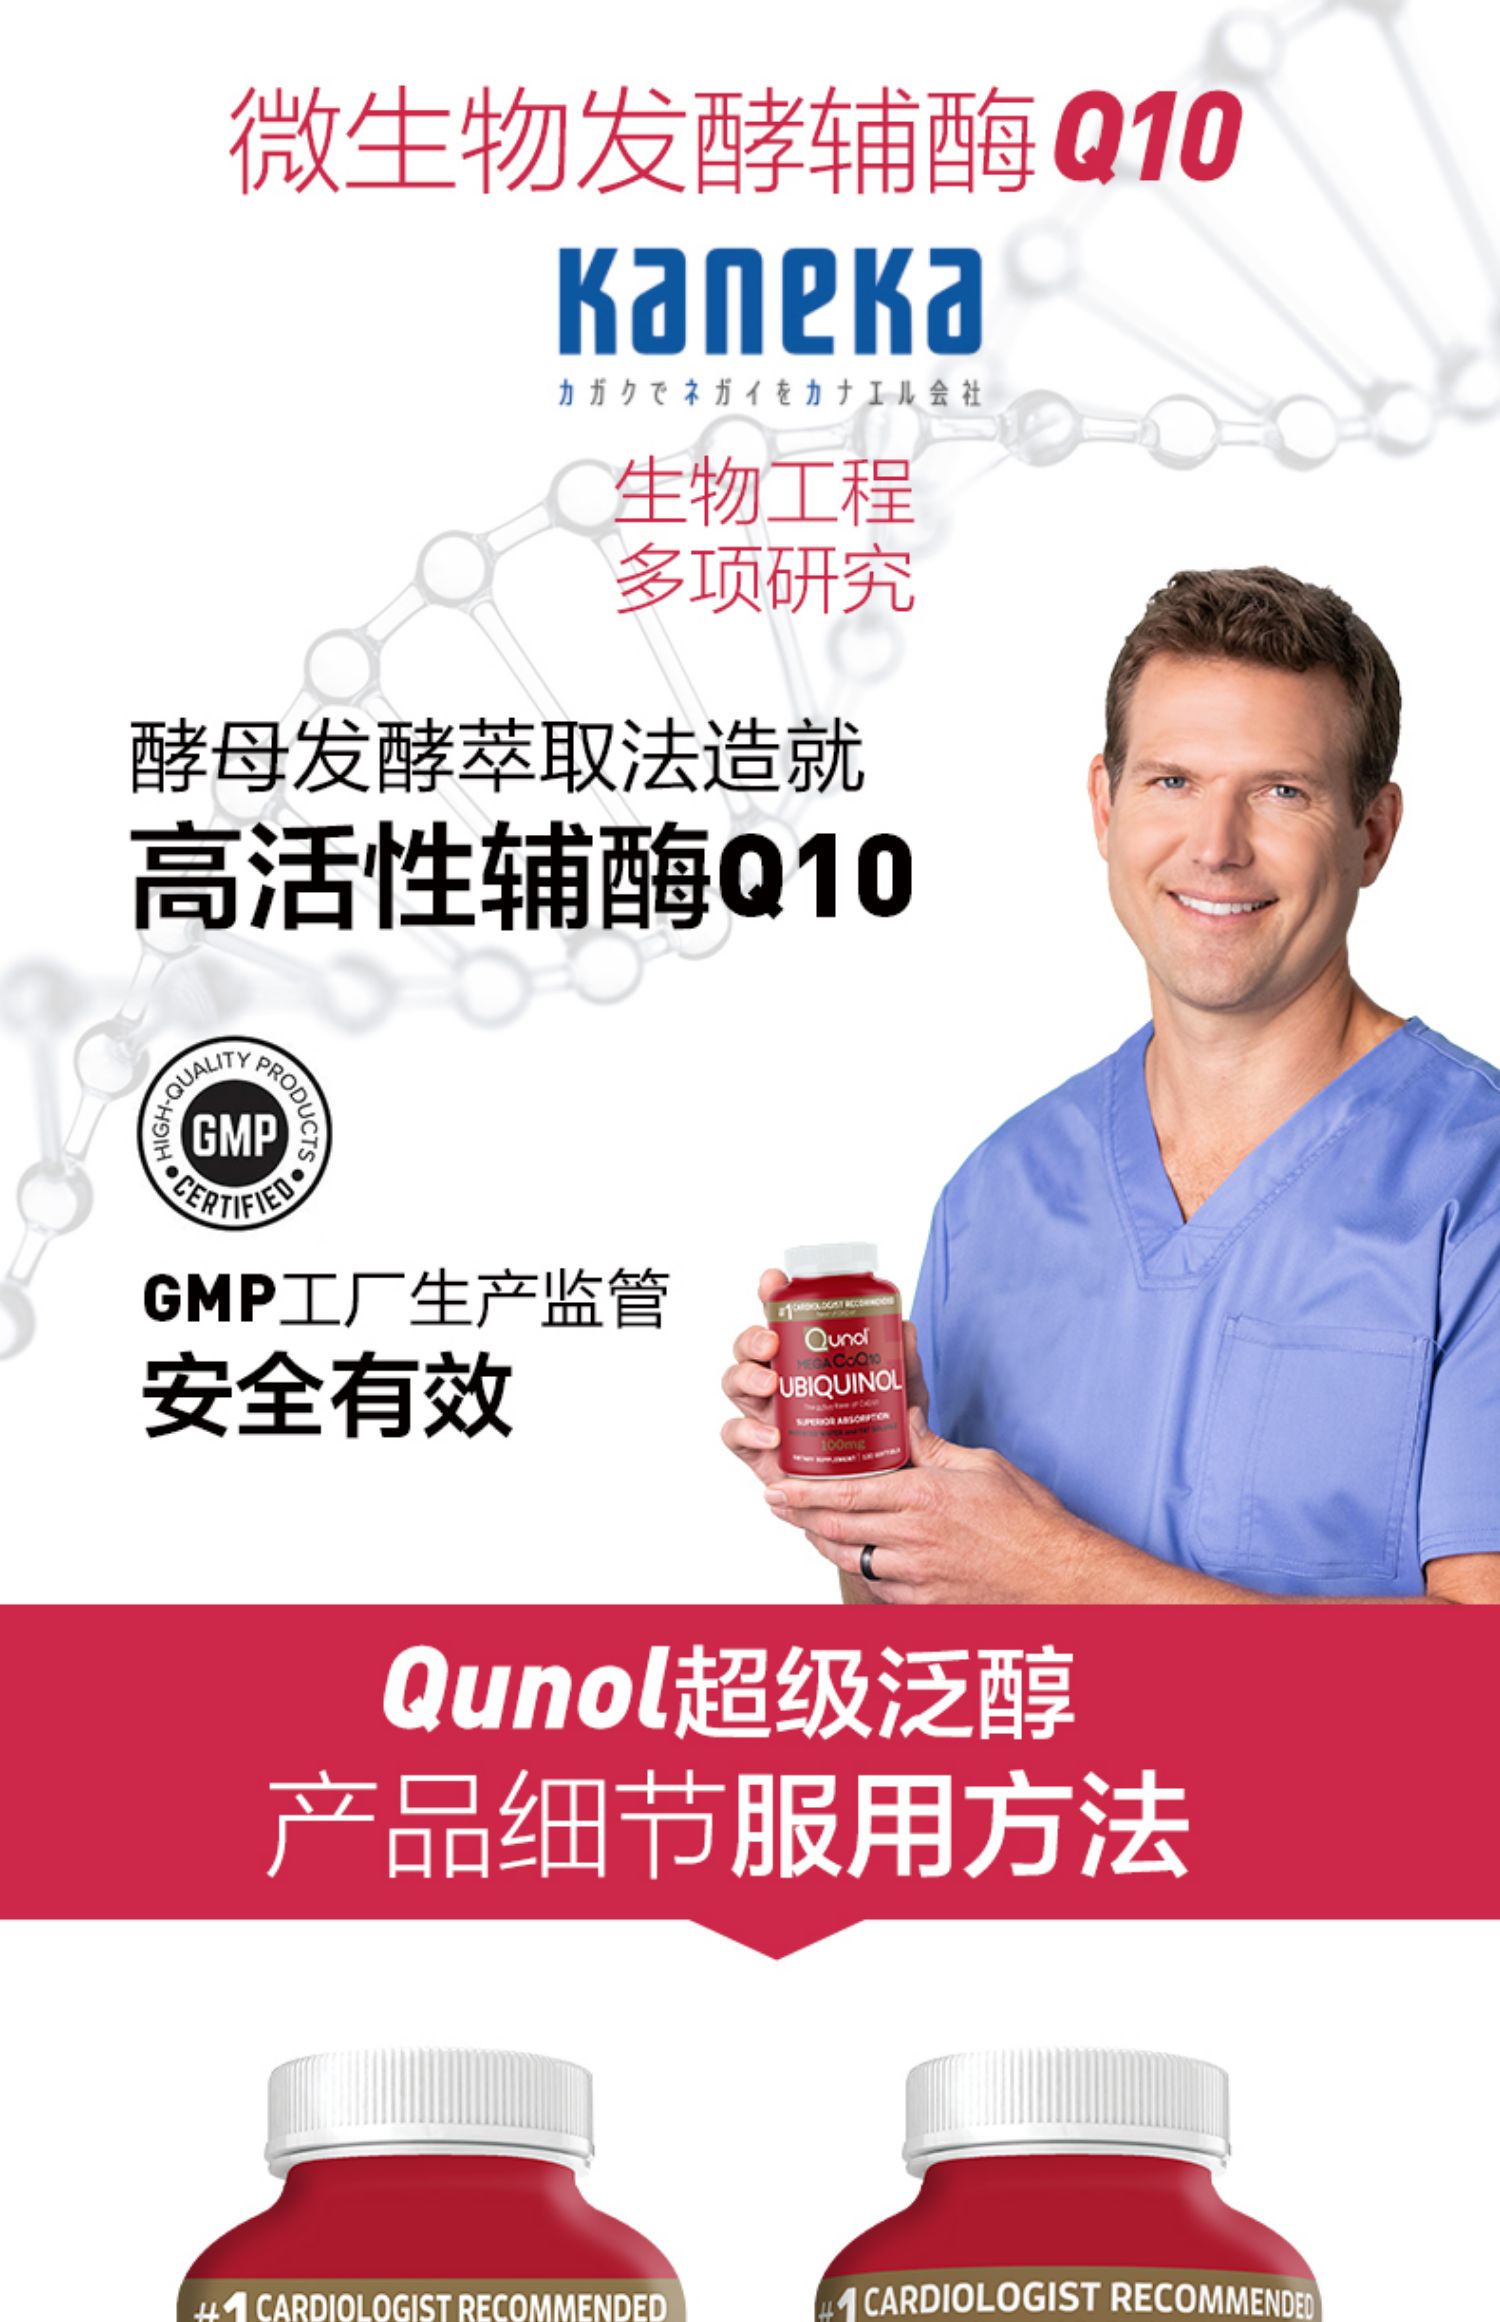 Qunol酋诺超级泛醇活性辅酶Q10